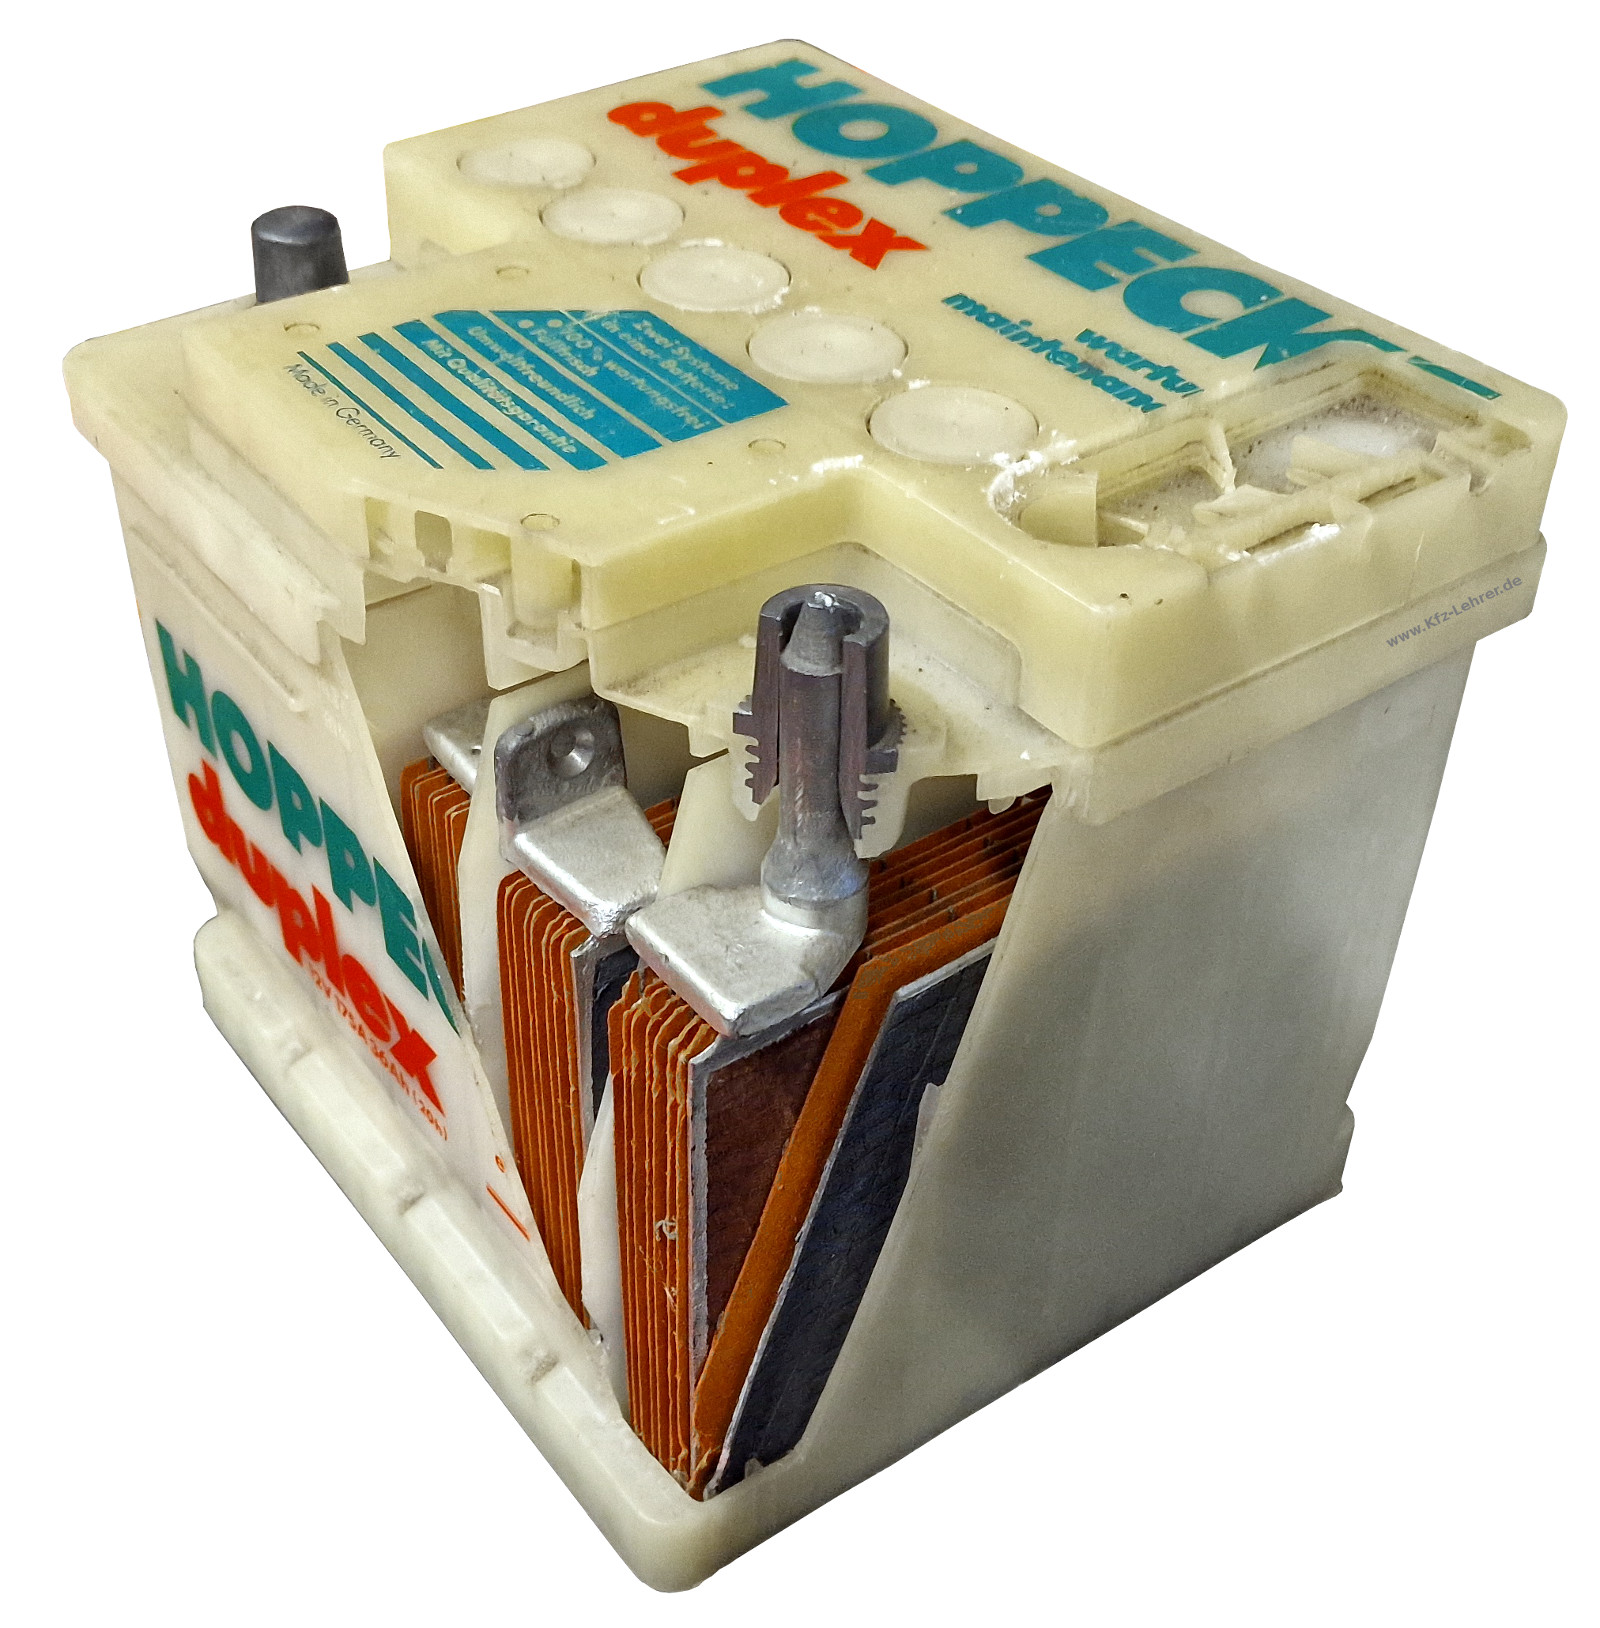 Schnittmodell einer Starterbatterie: Aufgeschnitten wurde das Gehäuse, so dass die Bleiplatten und Separatoren sichtbar werden.